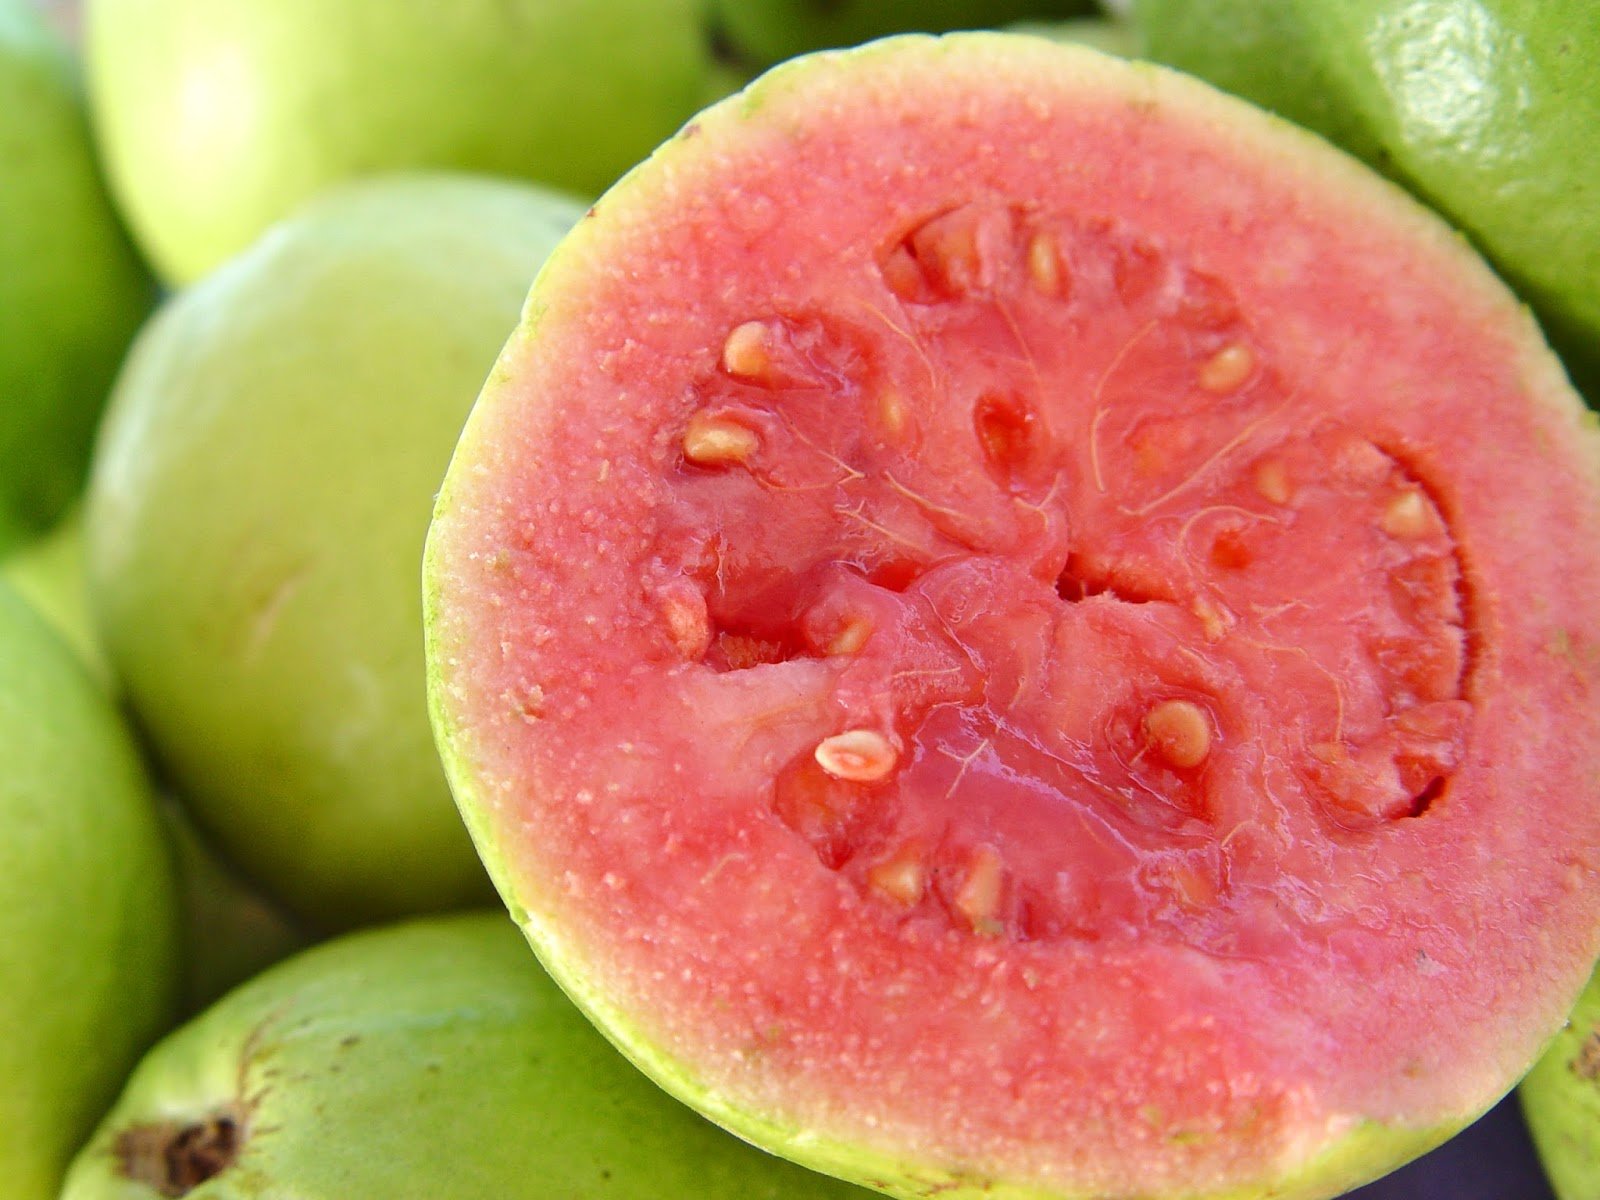 Antioxidants i vitamines: els grans beneficis d'aquesta fruita